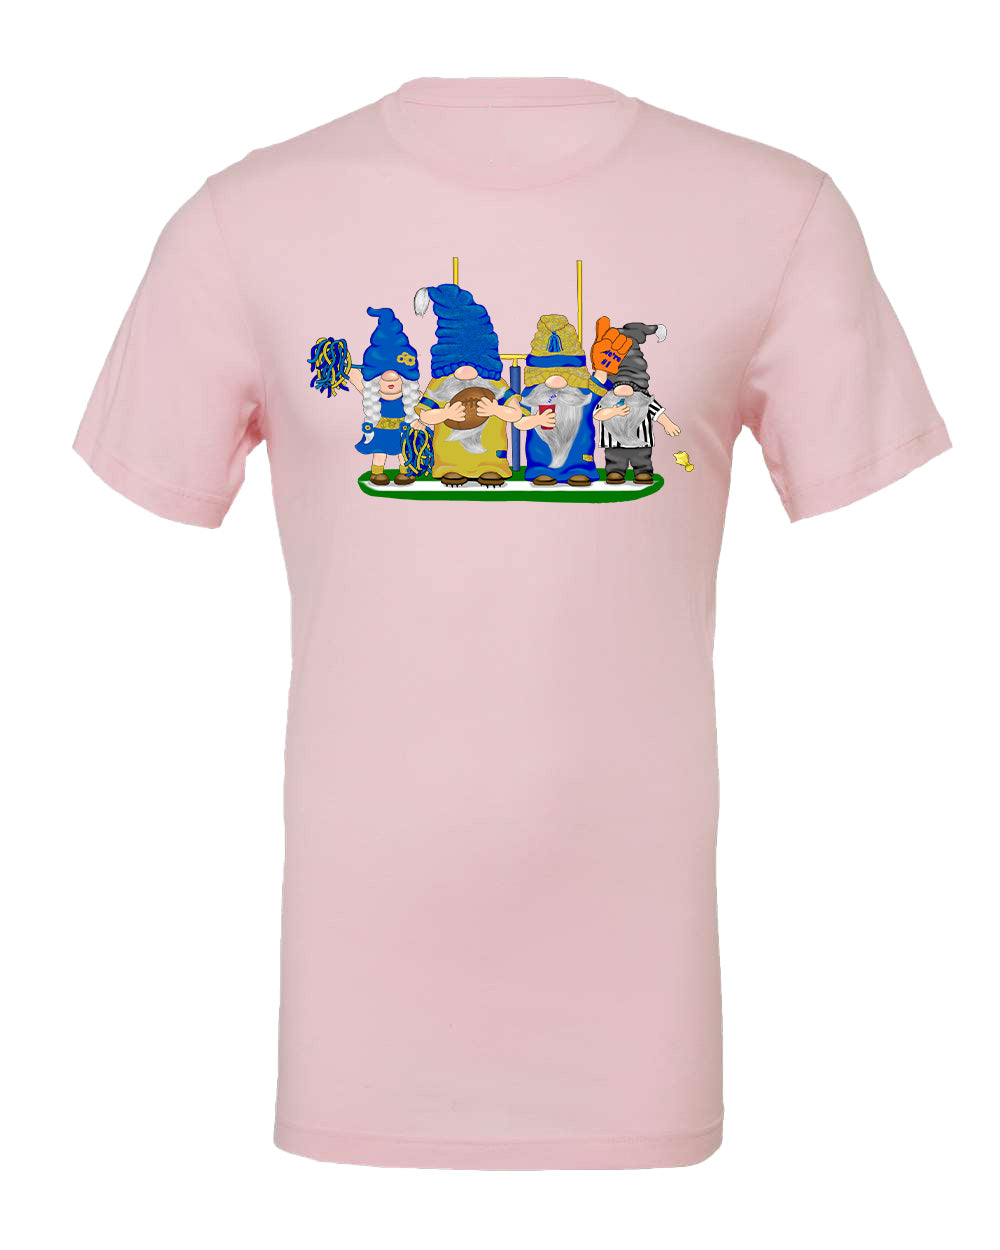 Blue & Gold Football Gnomes on Men's T-shirt (similar to LA)